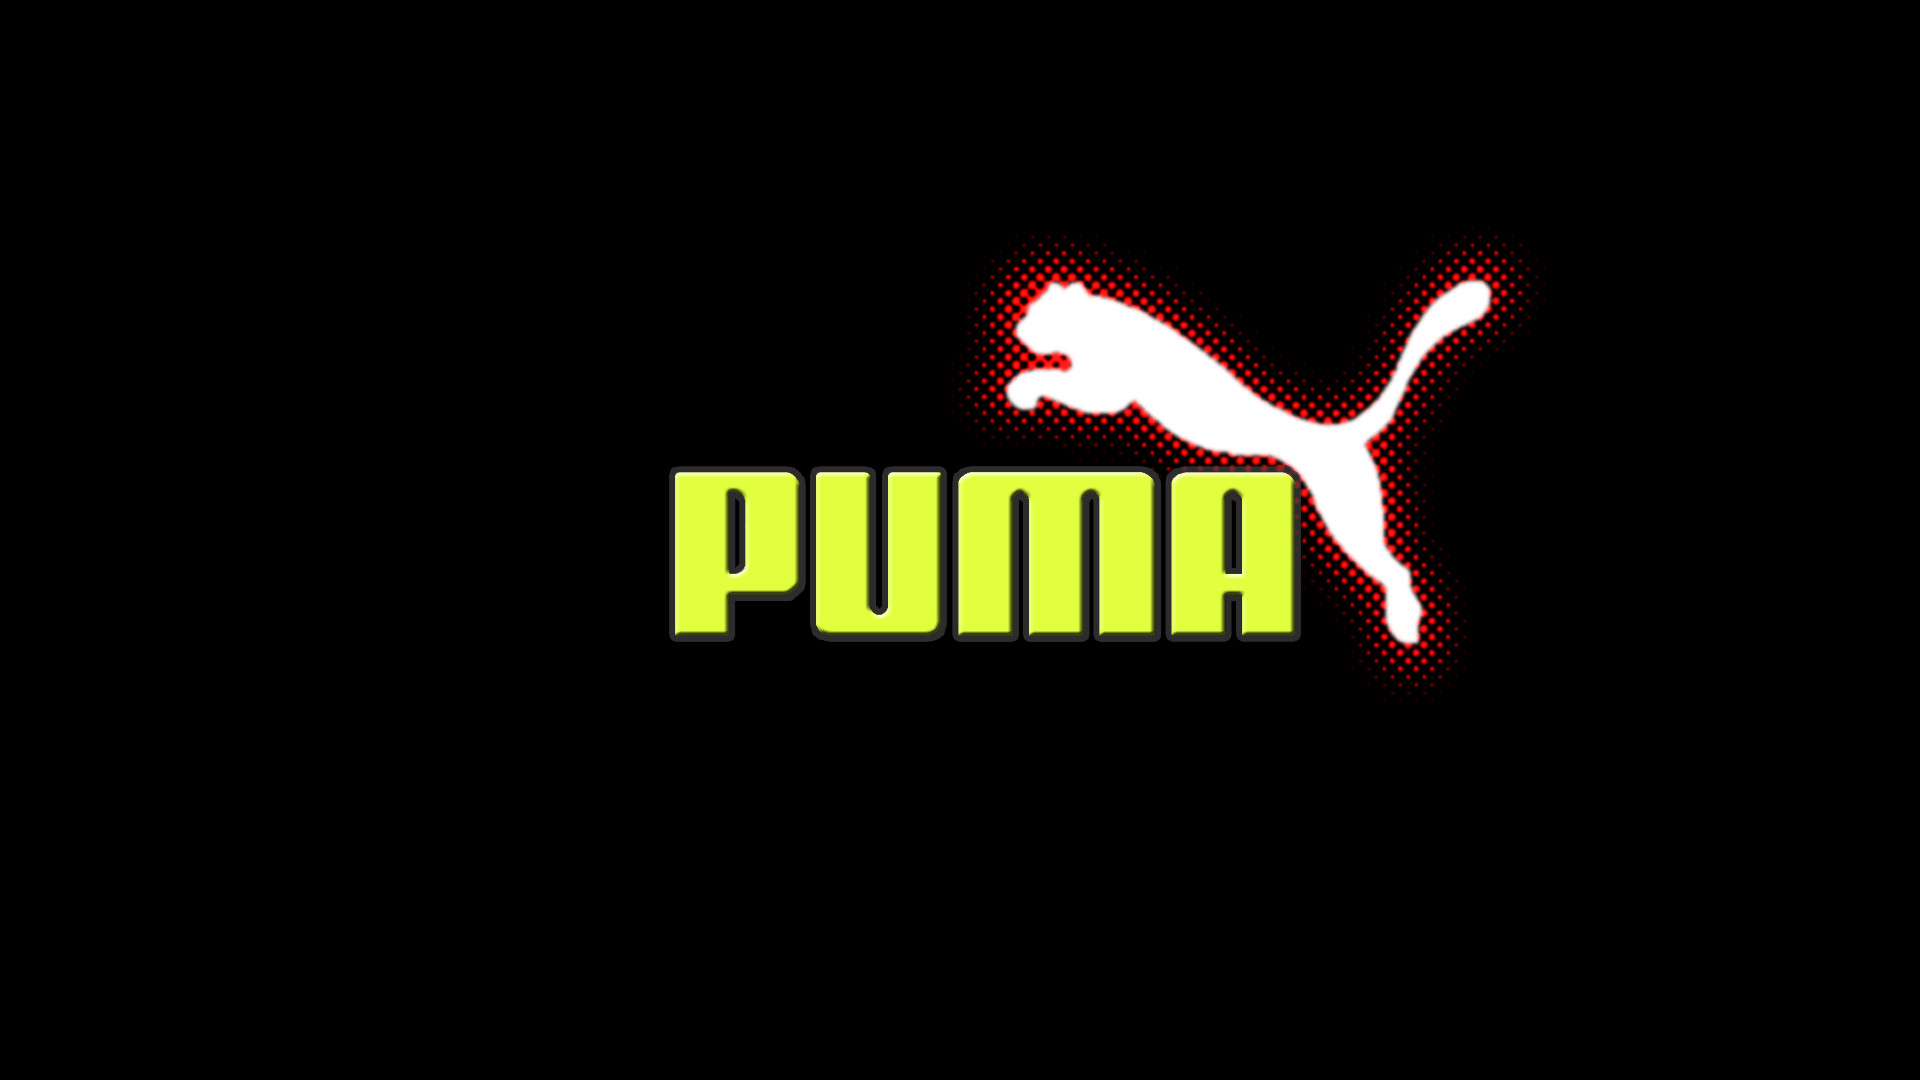 puma logo images hd